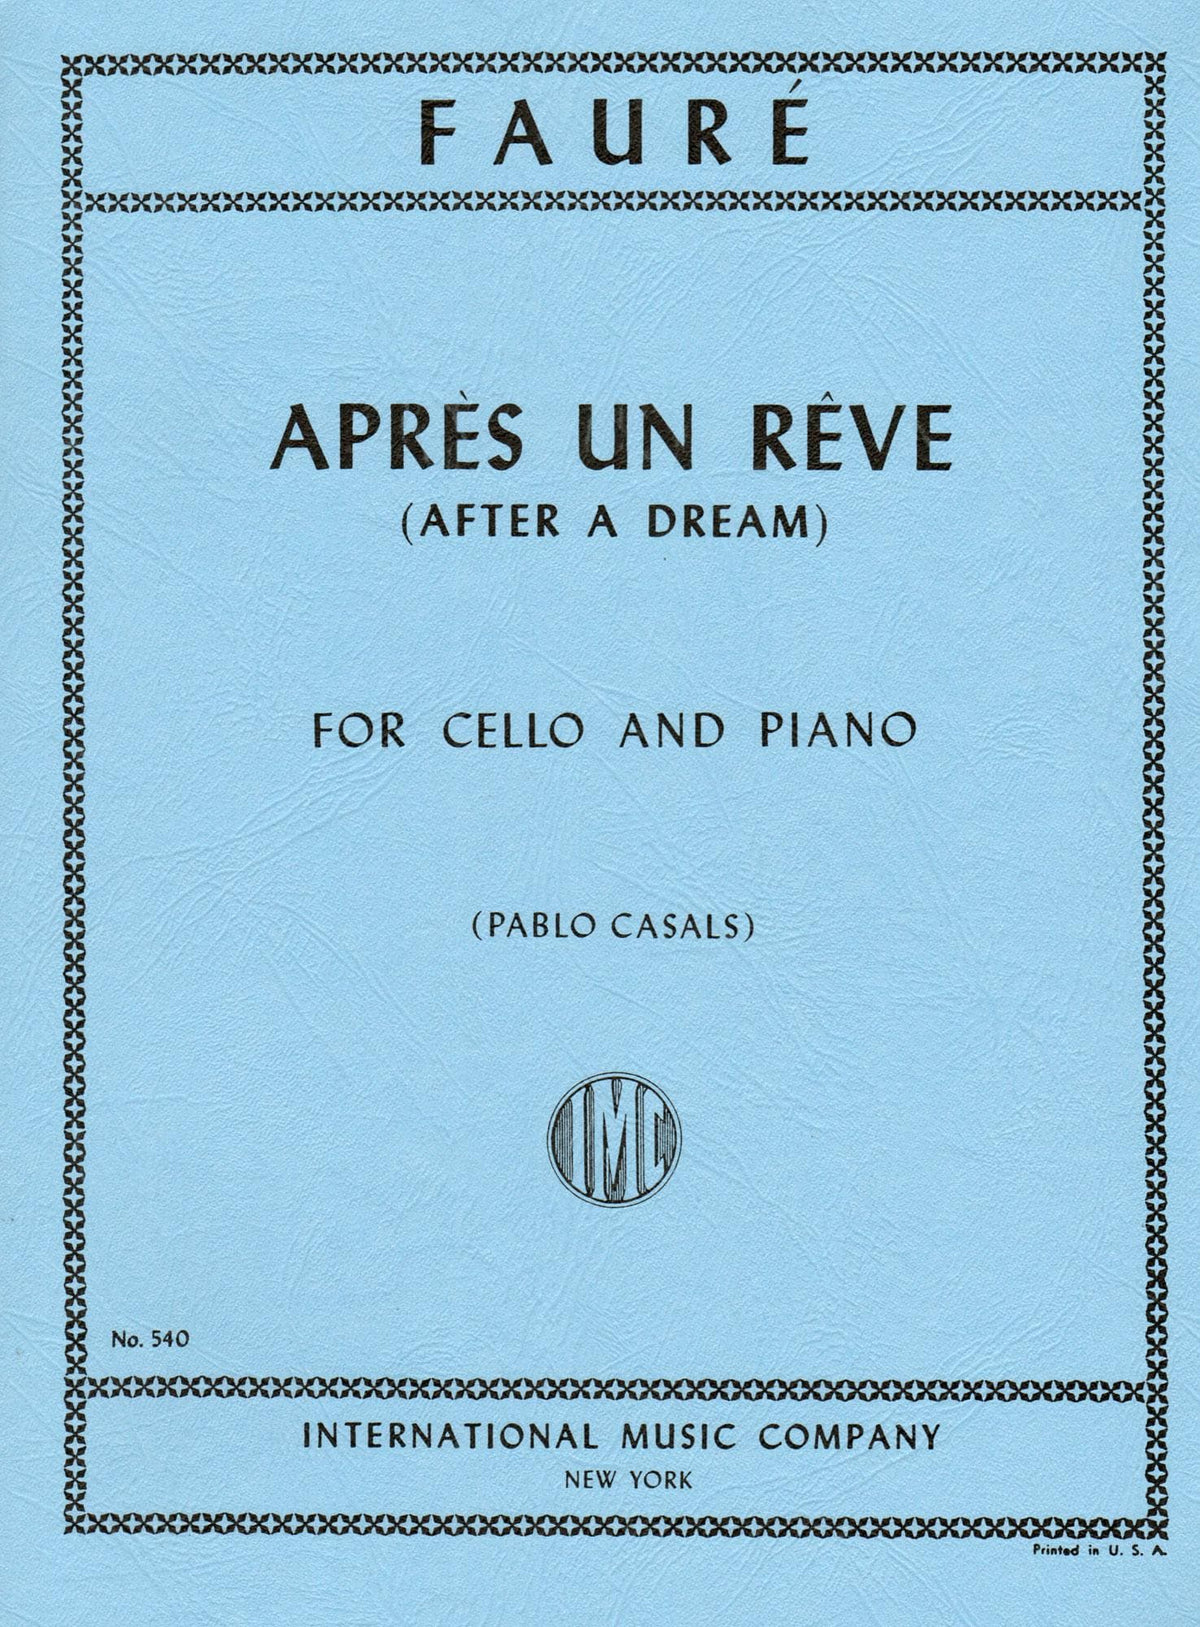 Fauré, Gabriel - Aprés un Rêve (After a Dream), Op 7, No 1 - Cello and Piano - edited by Pablo Casals - International Edition